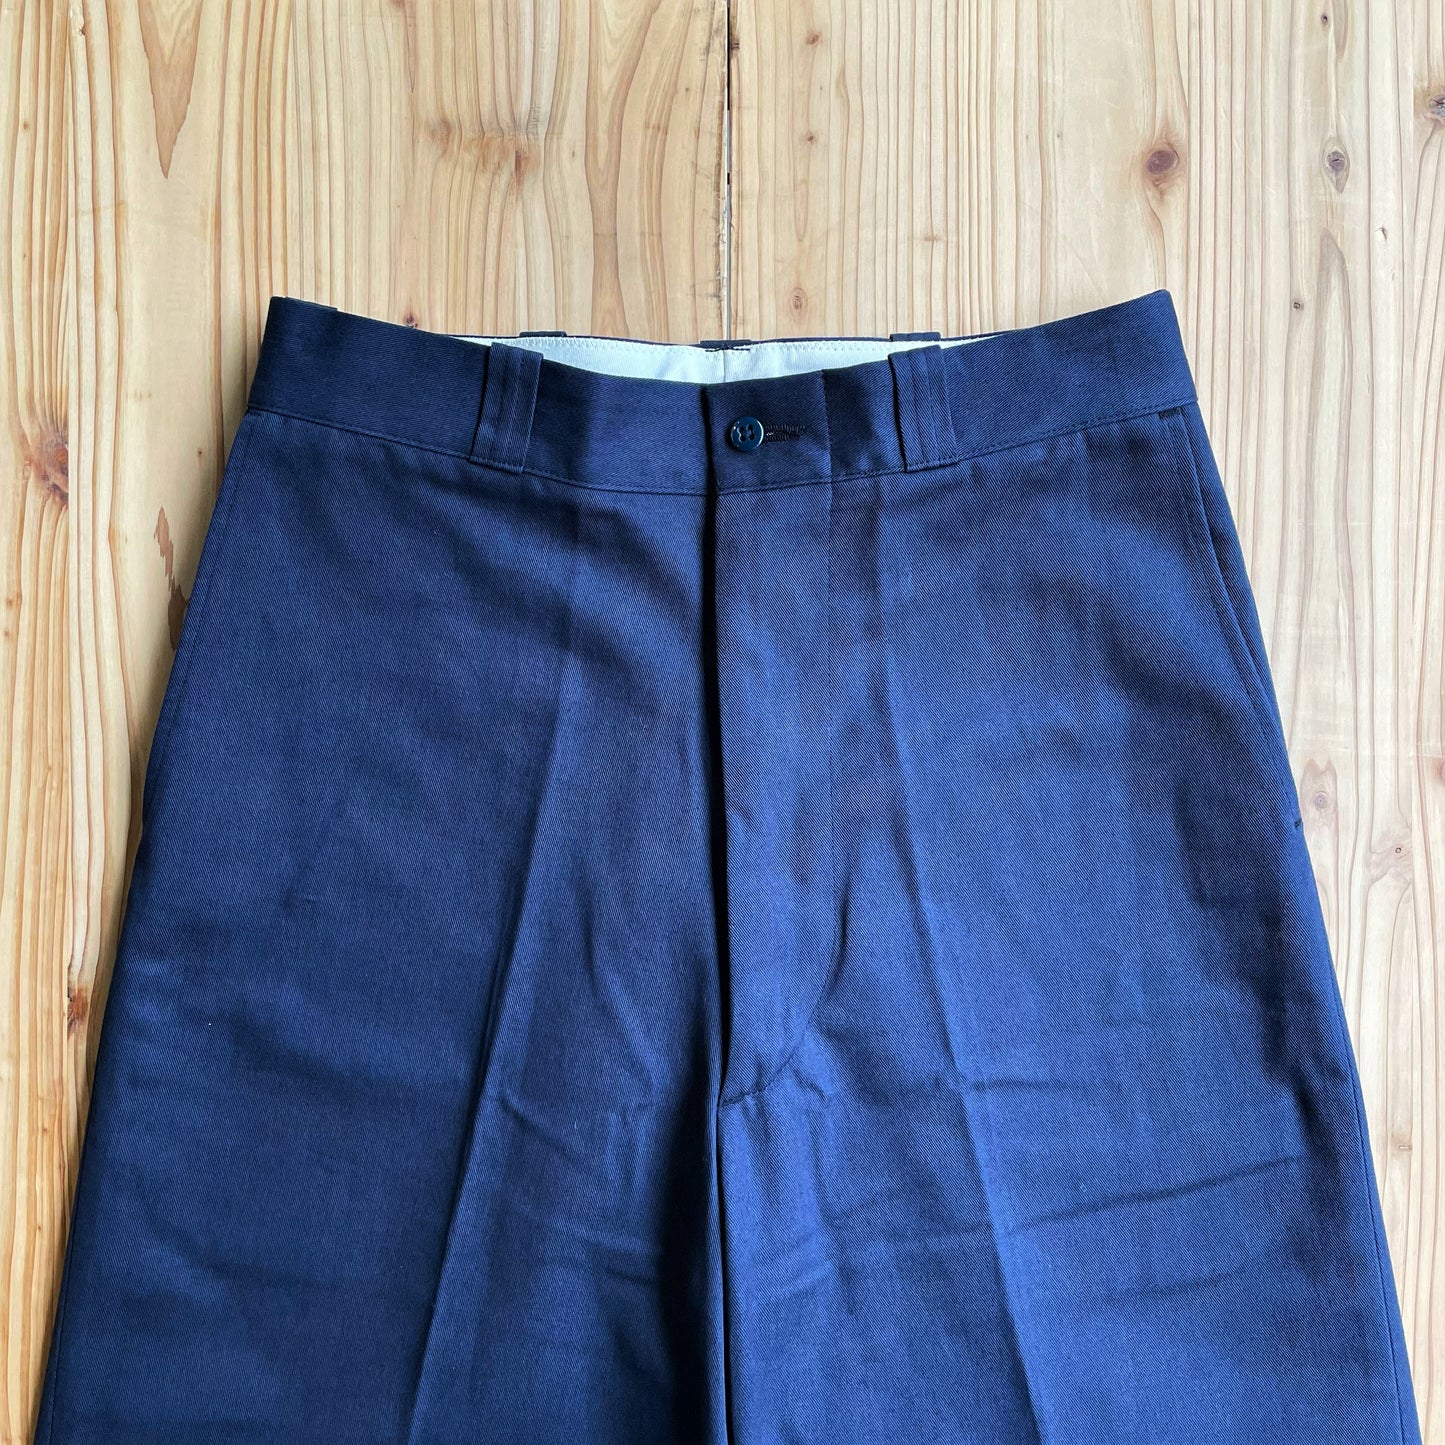 Yankshire M1963 Chino裤子